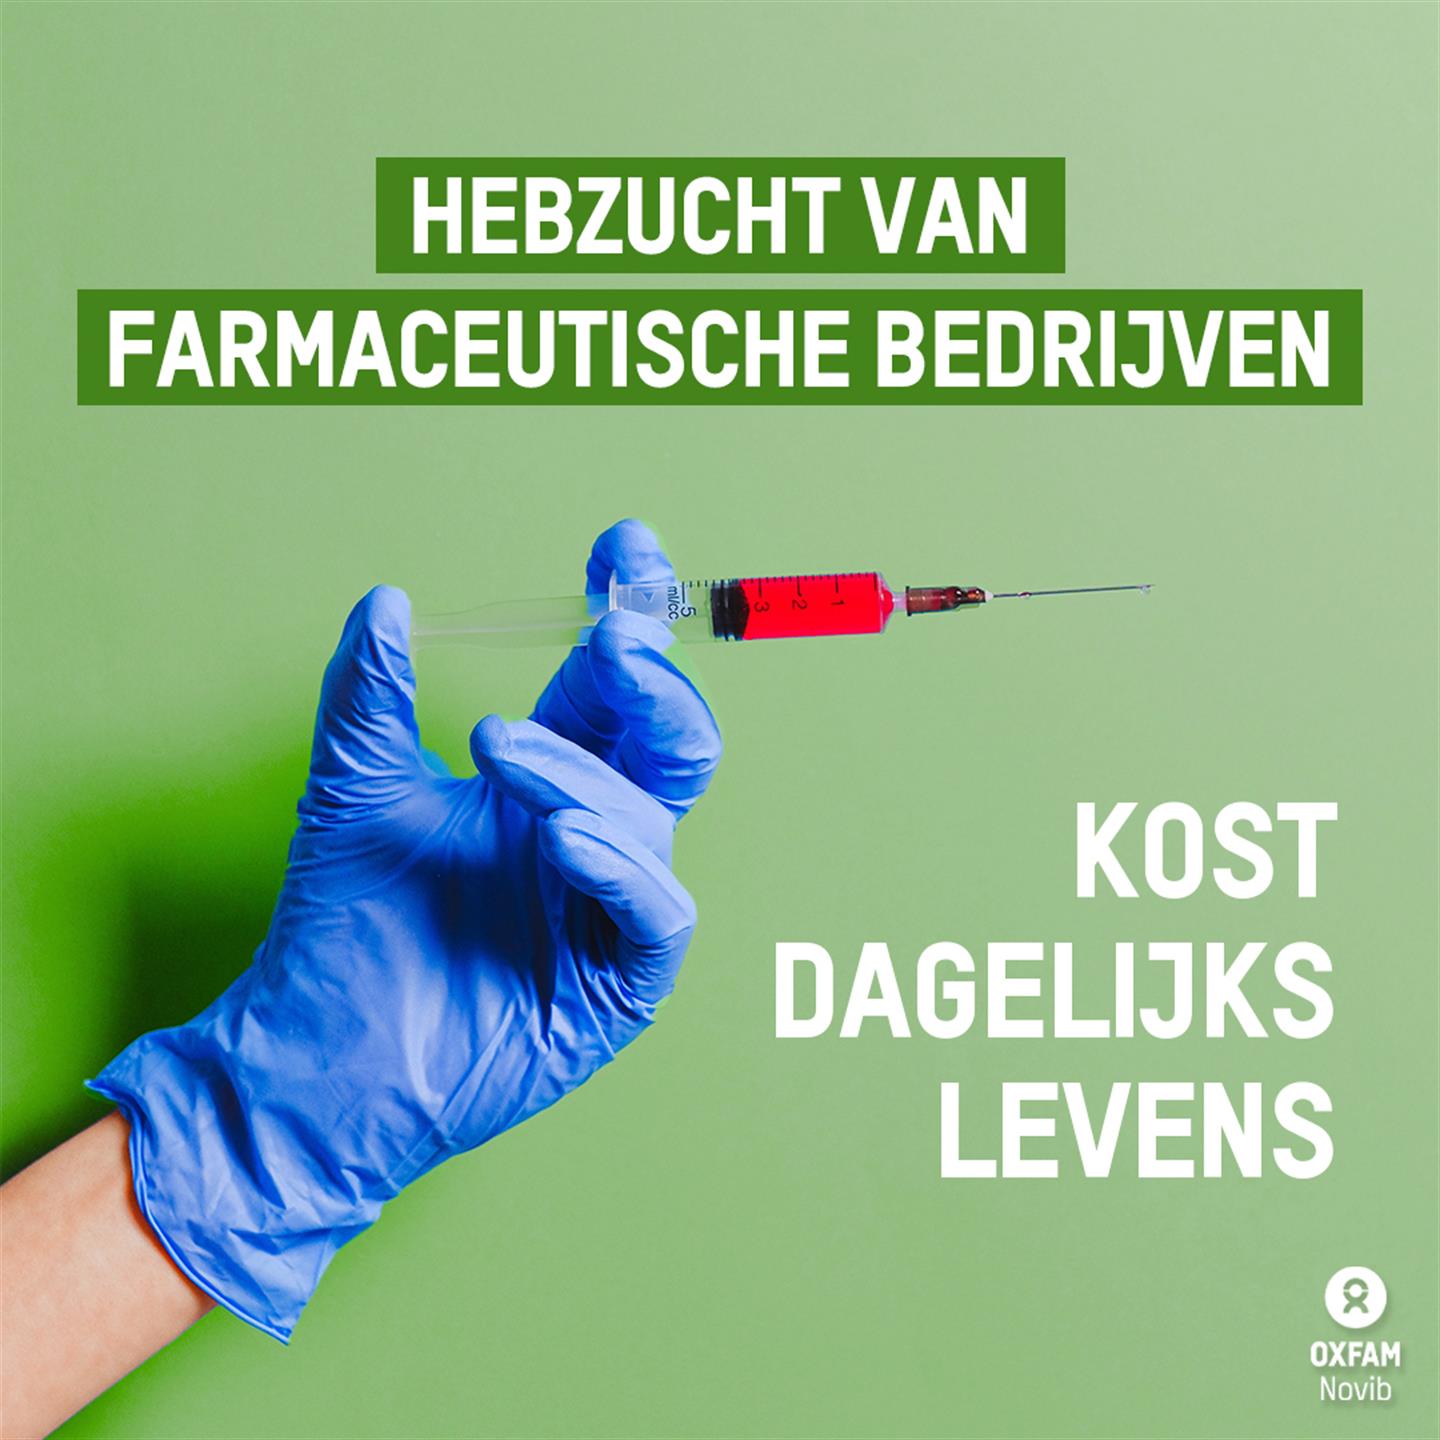 Een hand met een injectienaald erin, waarbij de tekst staat: 'Hebzucht van farmaceutische bedrijven kost dagelijks leven'